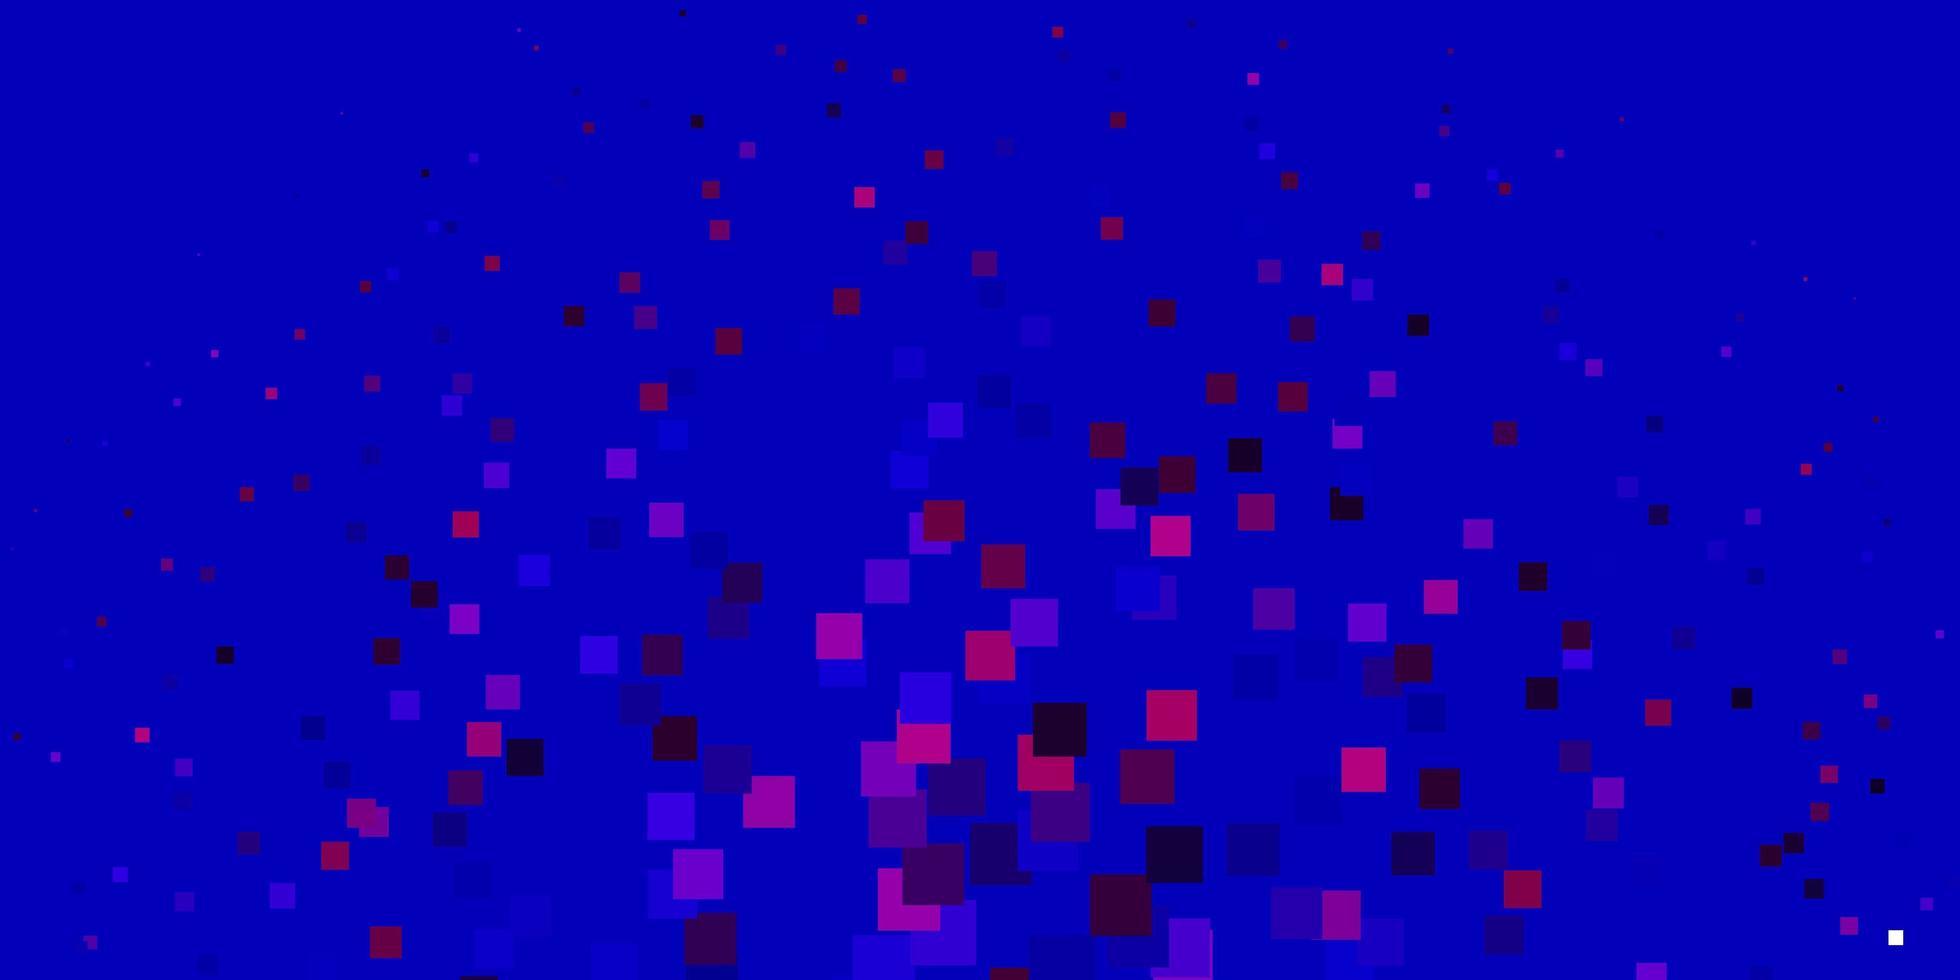 sfondo vettoriale azzurro, rosso in stile poligonale.